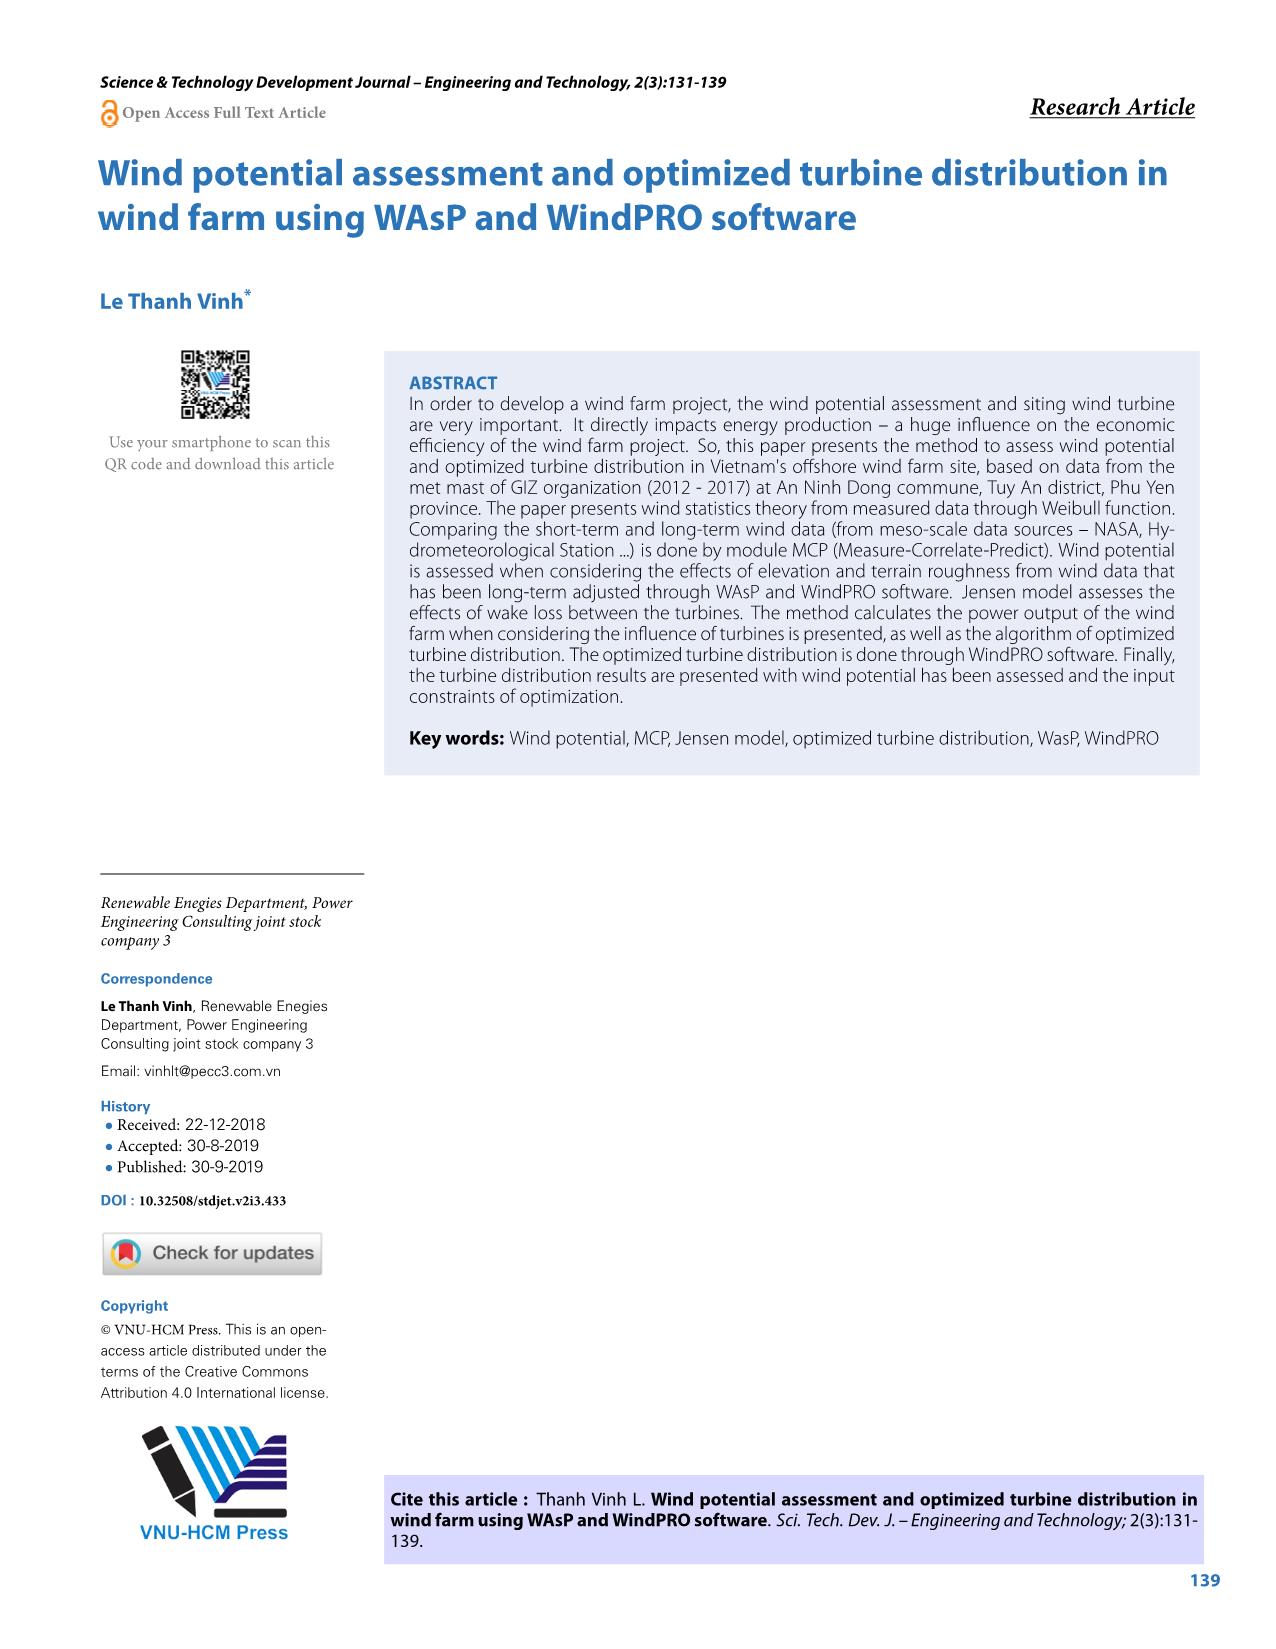 Đánh giá tiềm năng gió và tối ưu hóa phân bố tua - bin trong trang trại điện gió sử dụng phần mềm WAsP và WindPRO trang 9